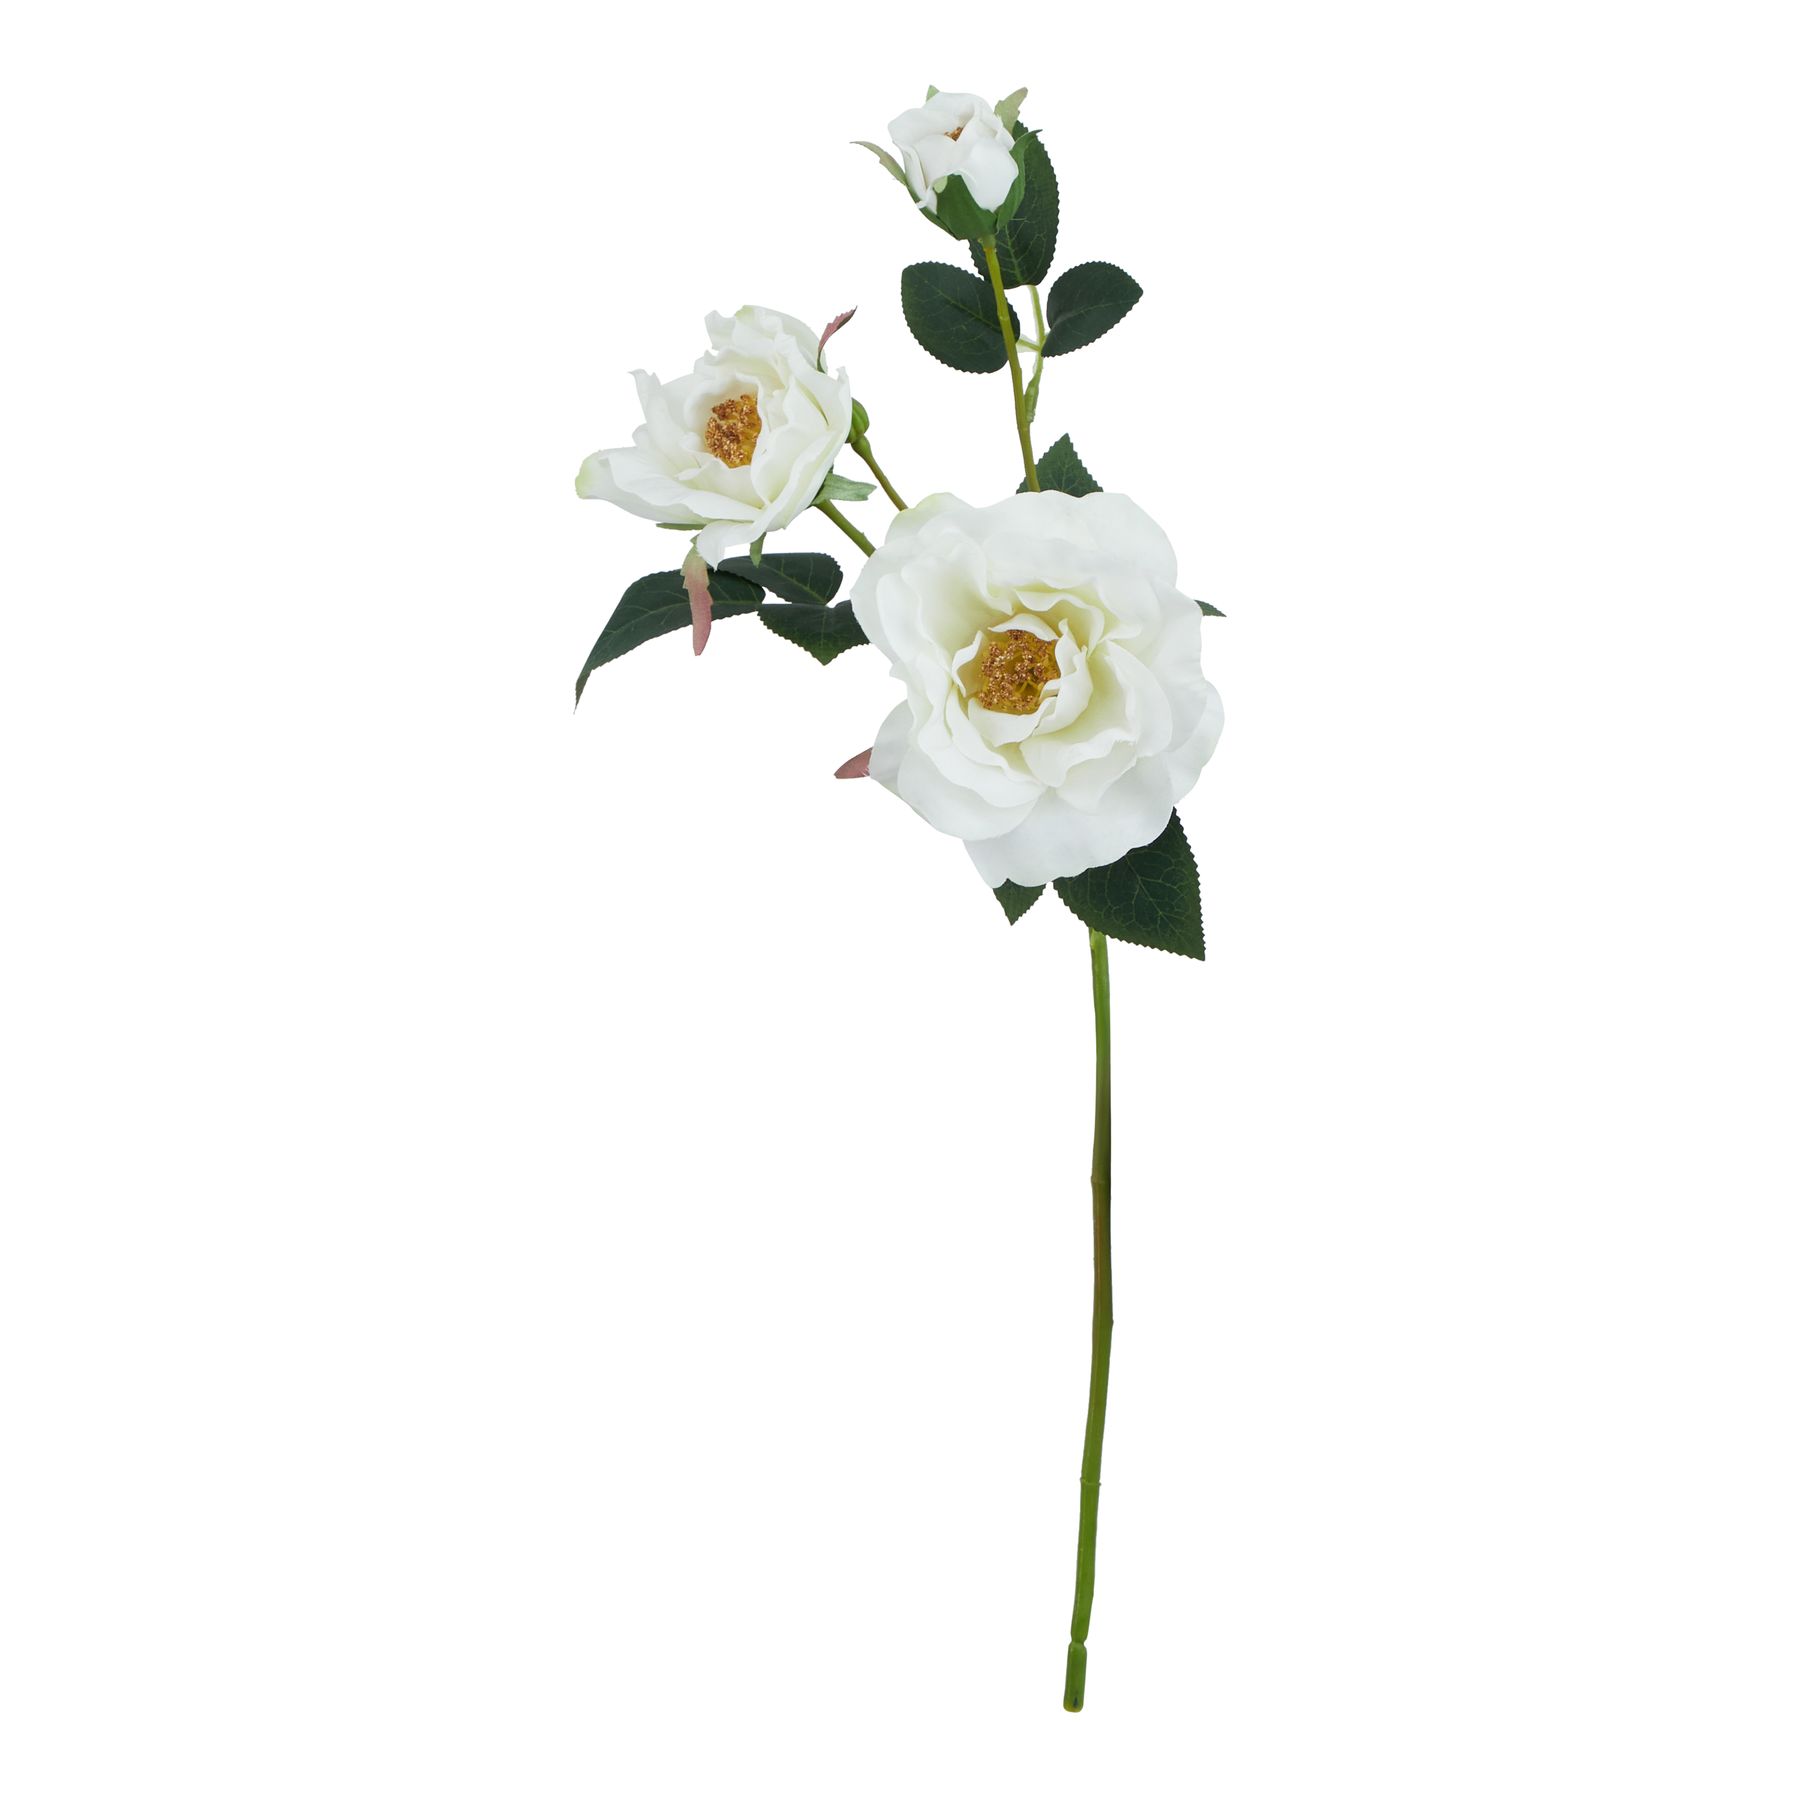 The Natural Garden Collection White Tea Rose - Image 1